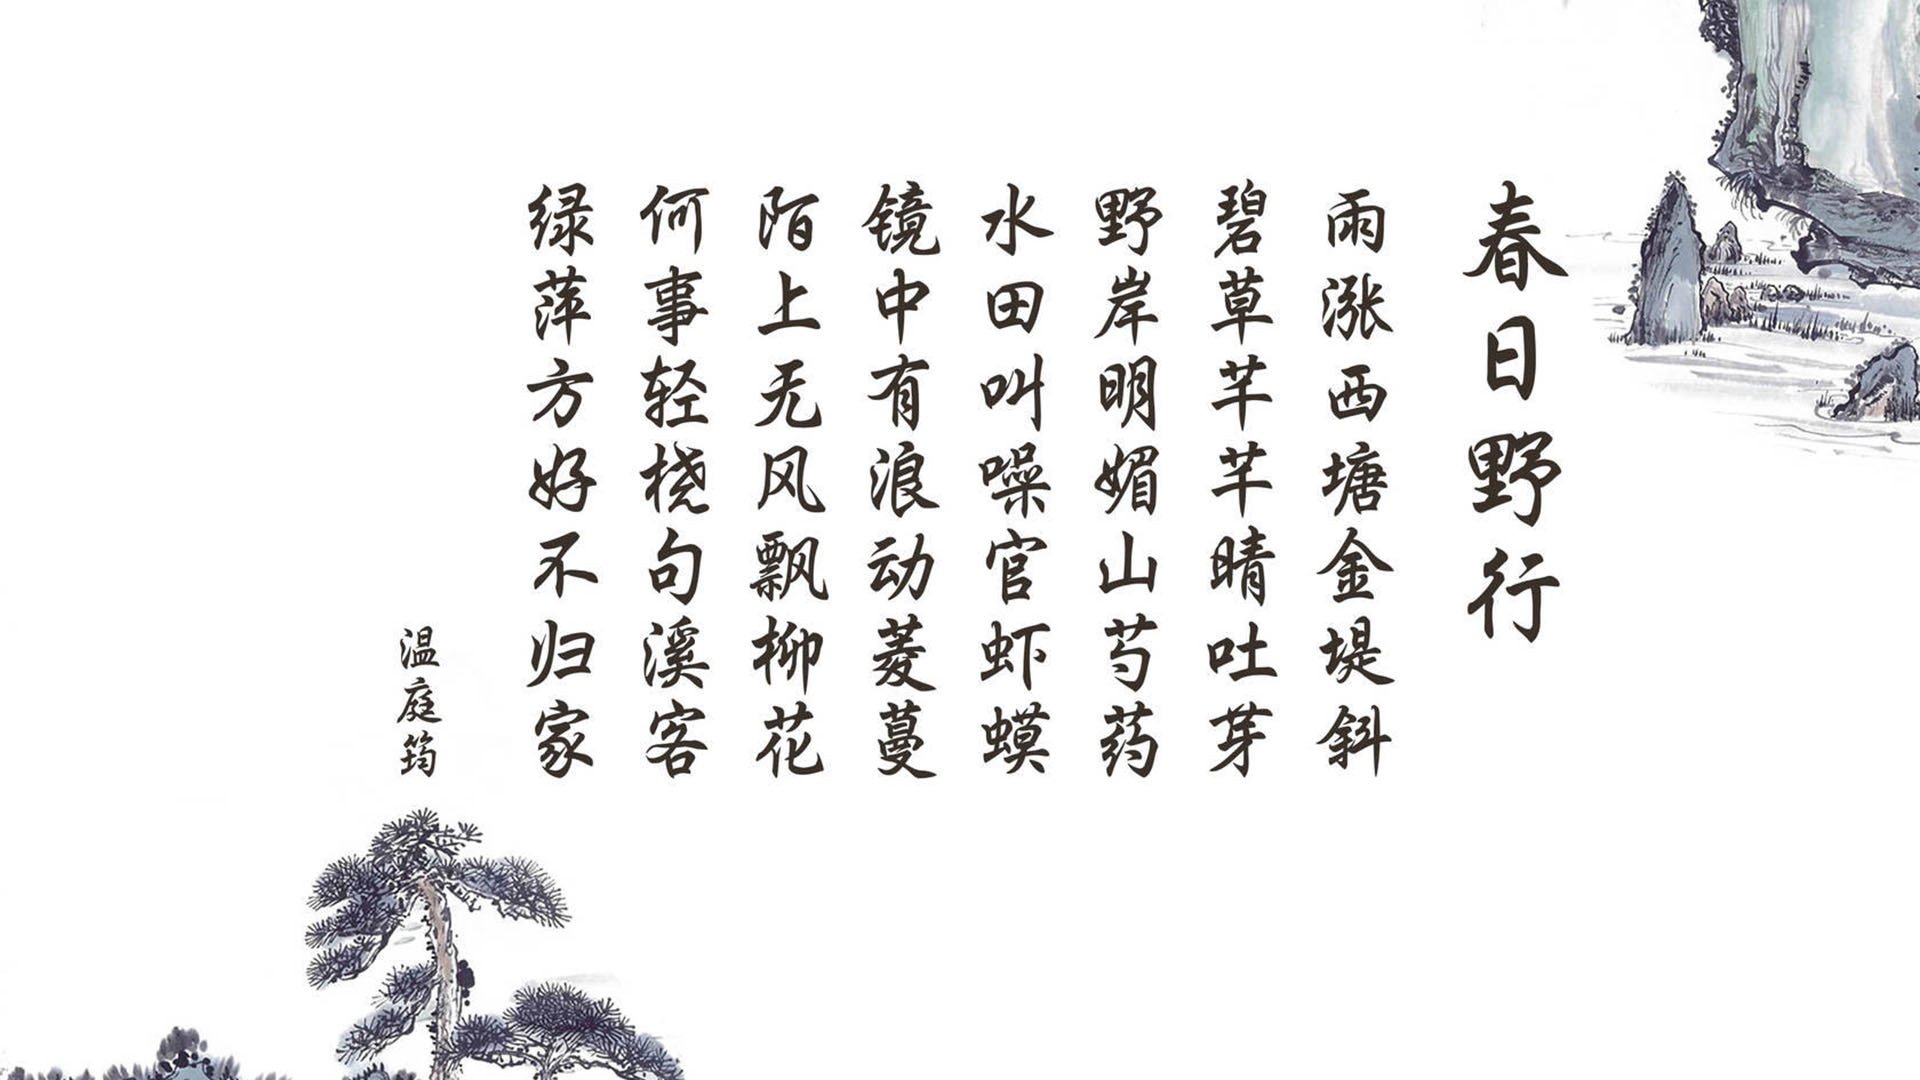 丁亥日， 丁亥日：古老的中国农历时间法术中，指代在干支纪年中以“丁”为天干、“亥”为地支的一天。作为农历中的一个重要时间节点，丁亥日在中国传统文化中有着深远的意义和影响。